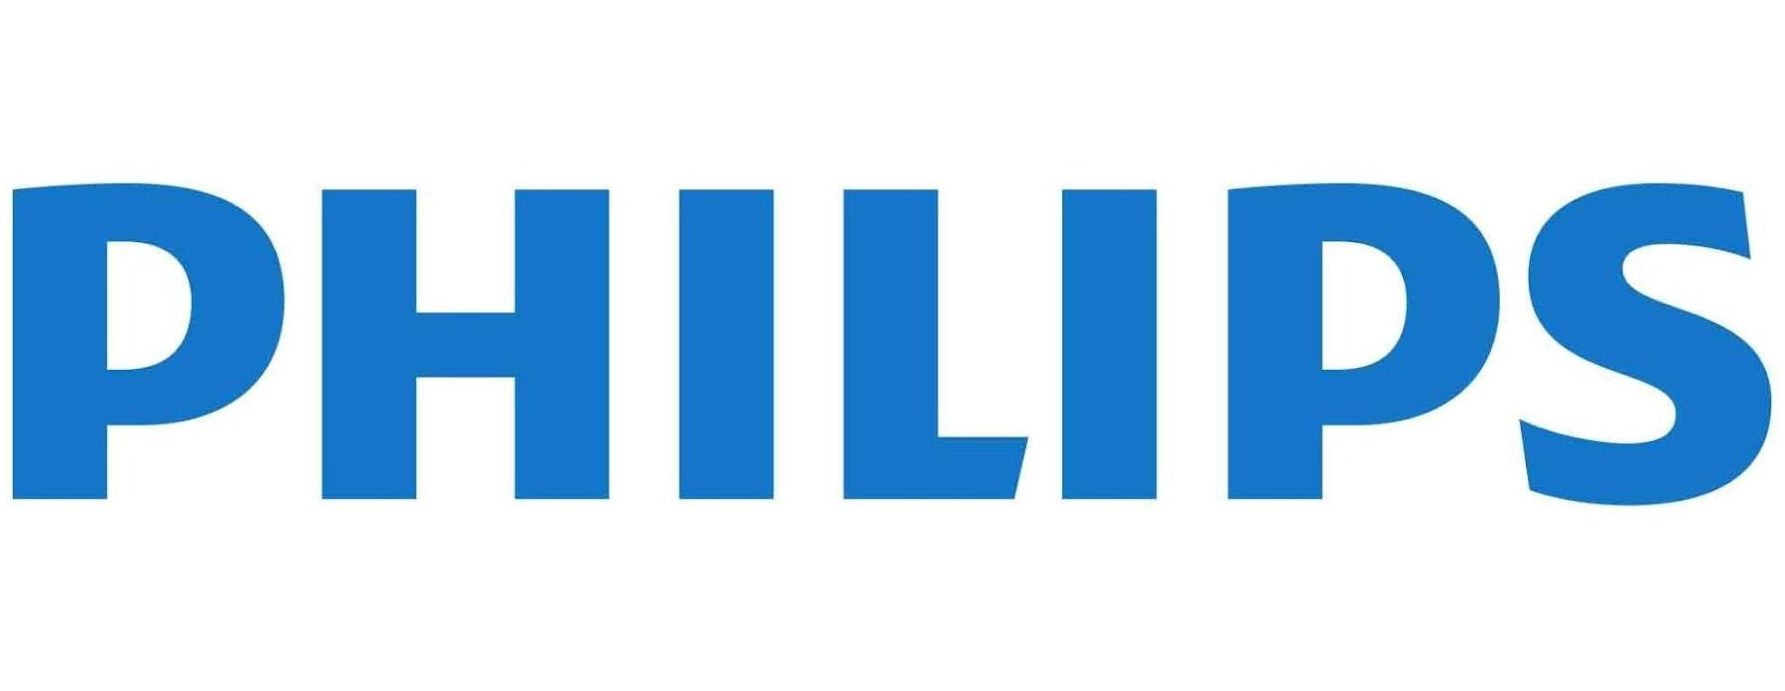 شعار فيليبس